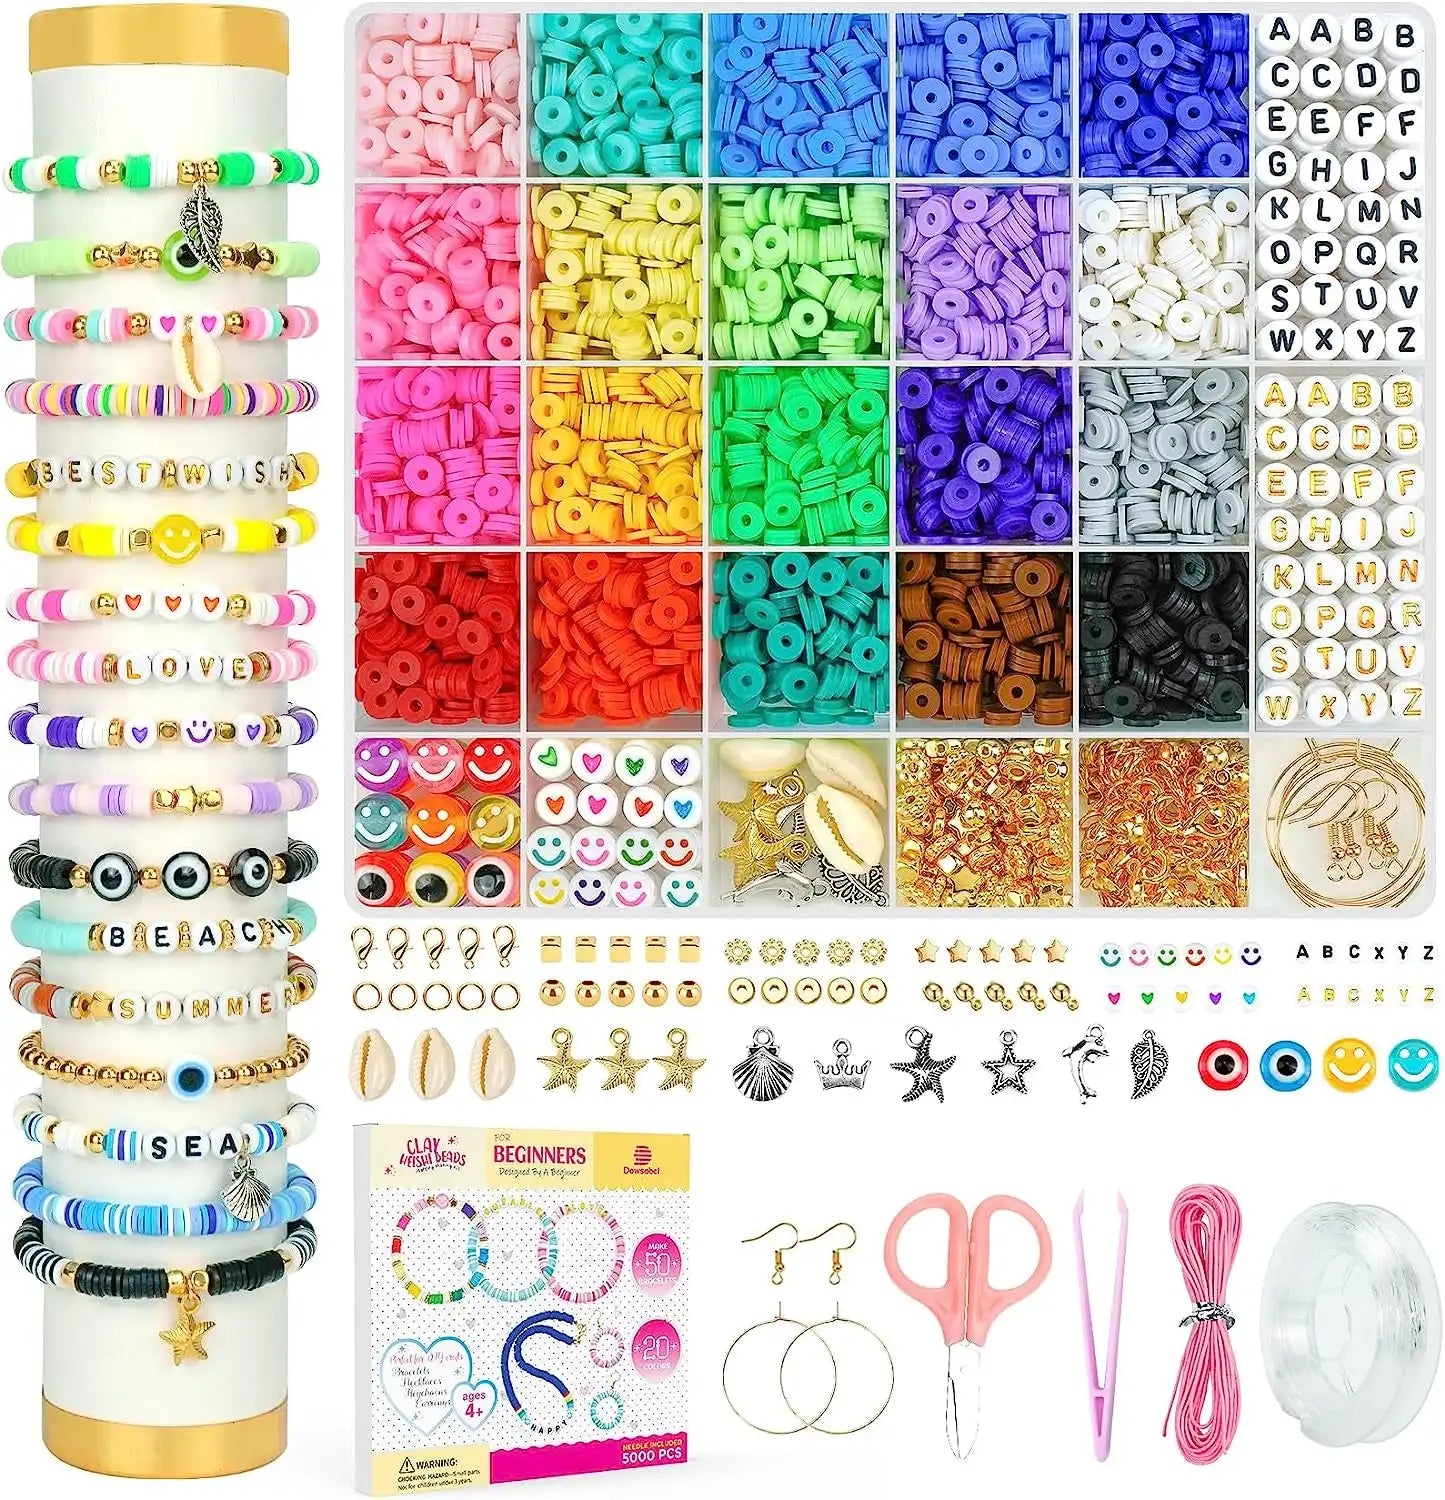 Clay Beads Bracelet Making Kit for Beginner